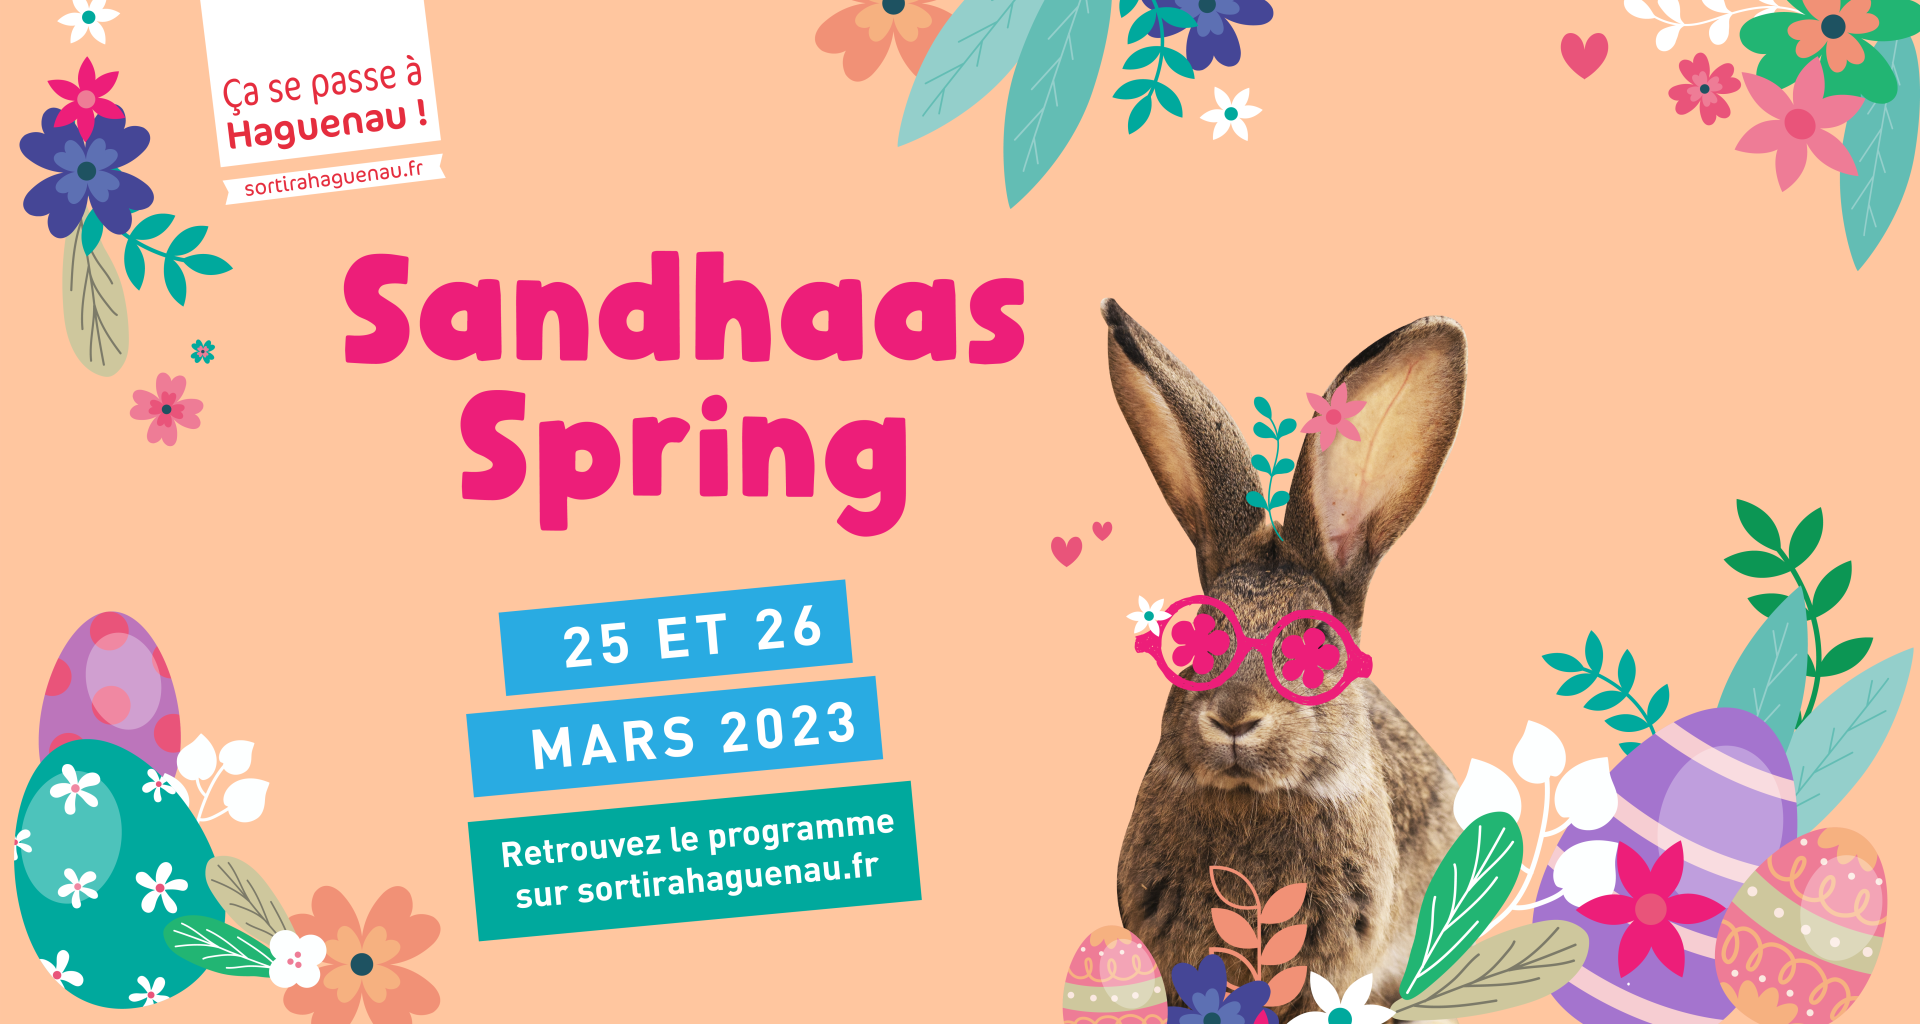 Sandhaas Spring fête du Printemps à Haguenau